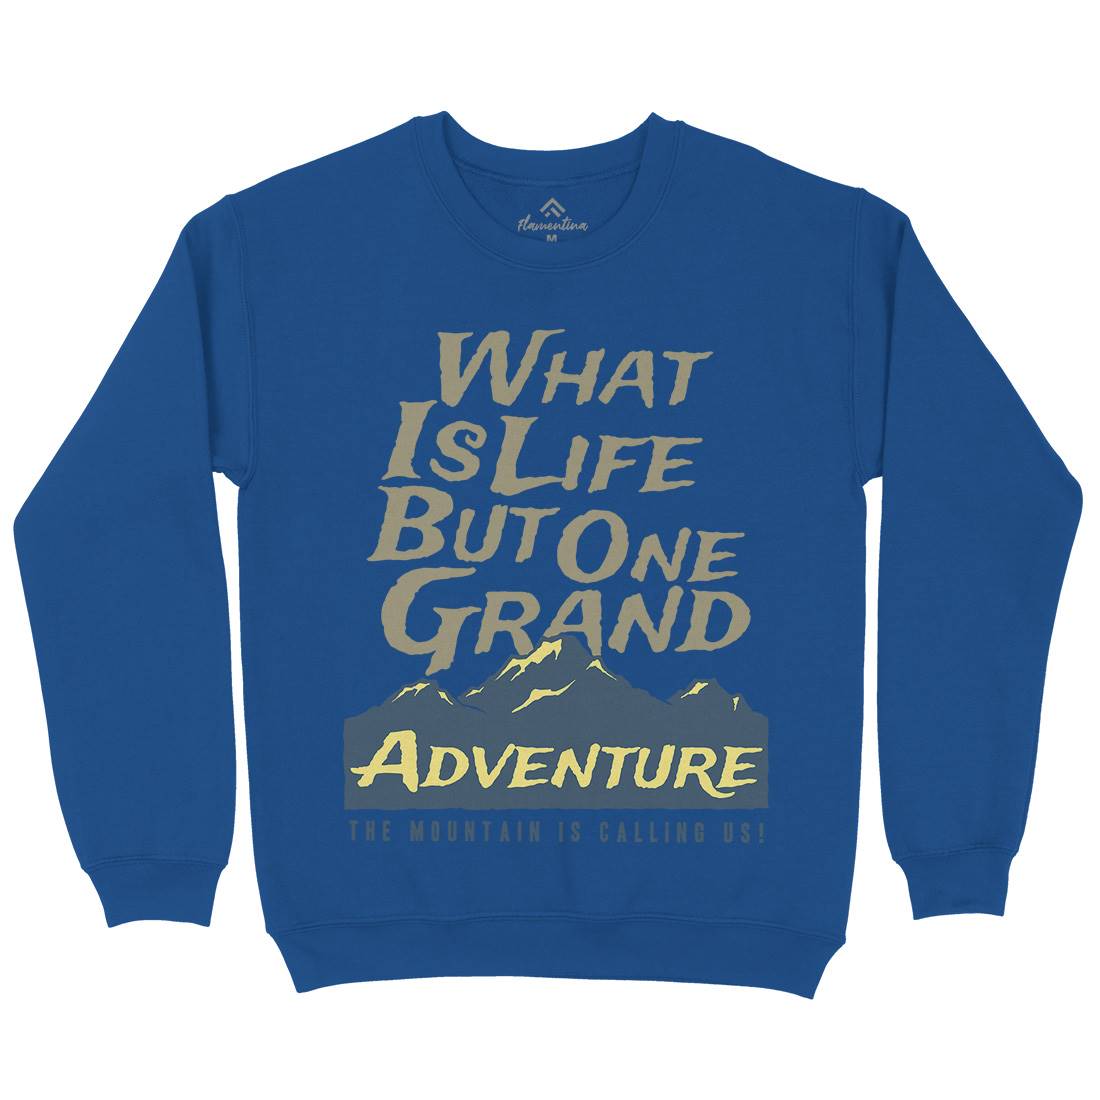 Great Adventure Kids Crew Neck Sweatshirt Nature A321